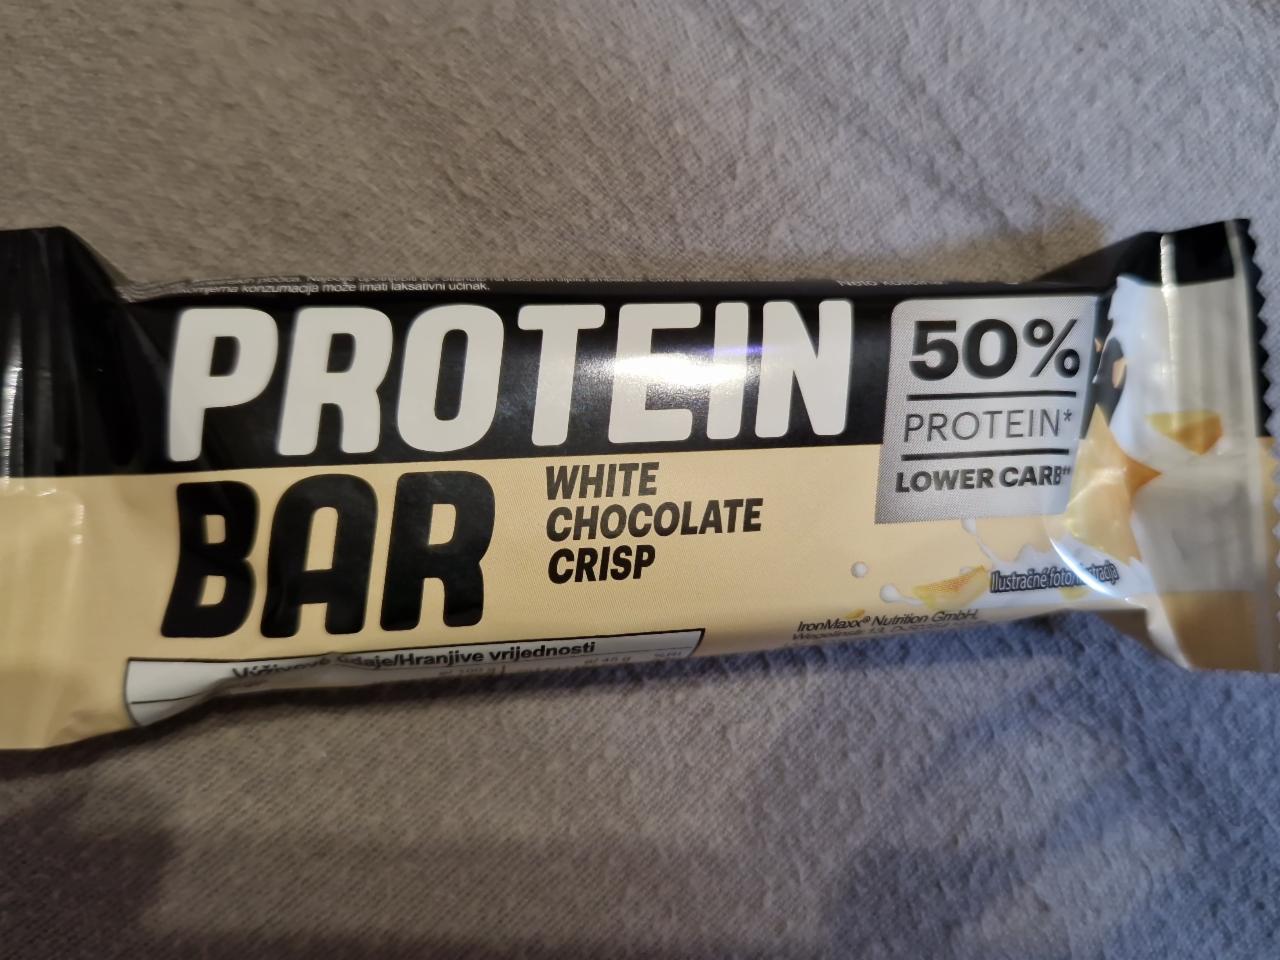 Fotografie - Protein bar white chocolate crisp 50% protein